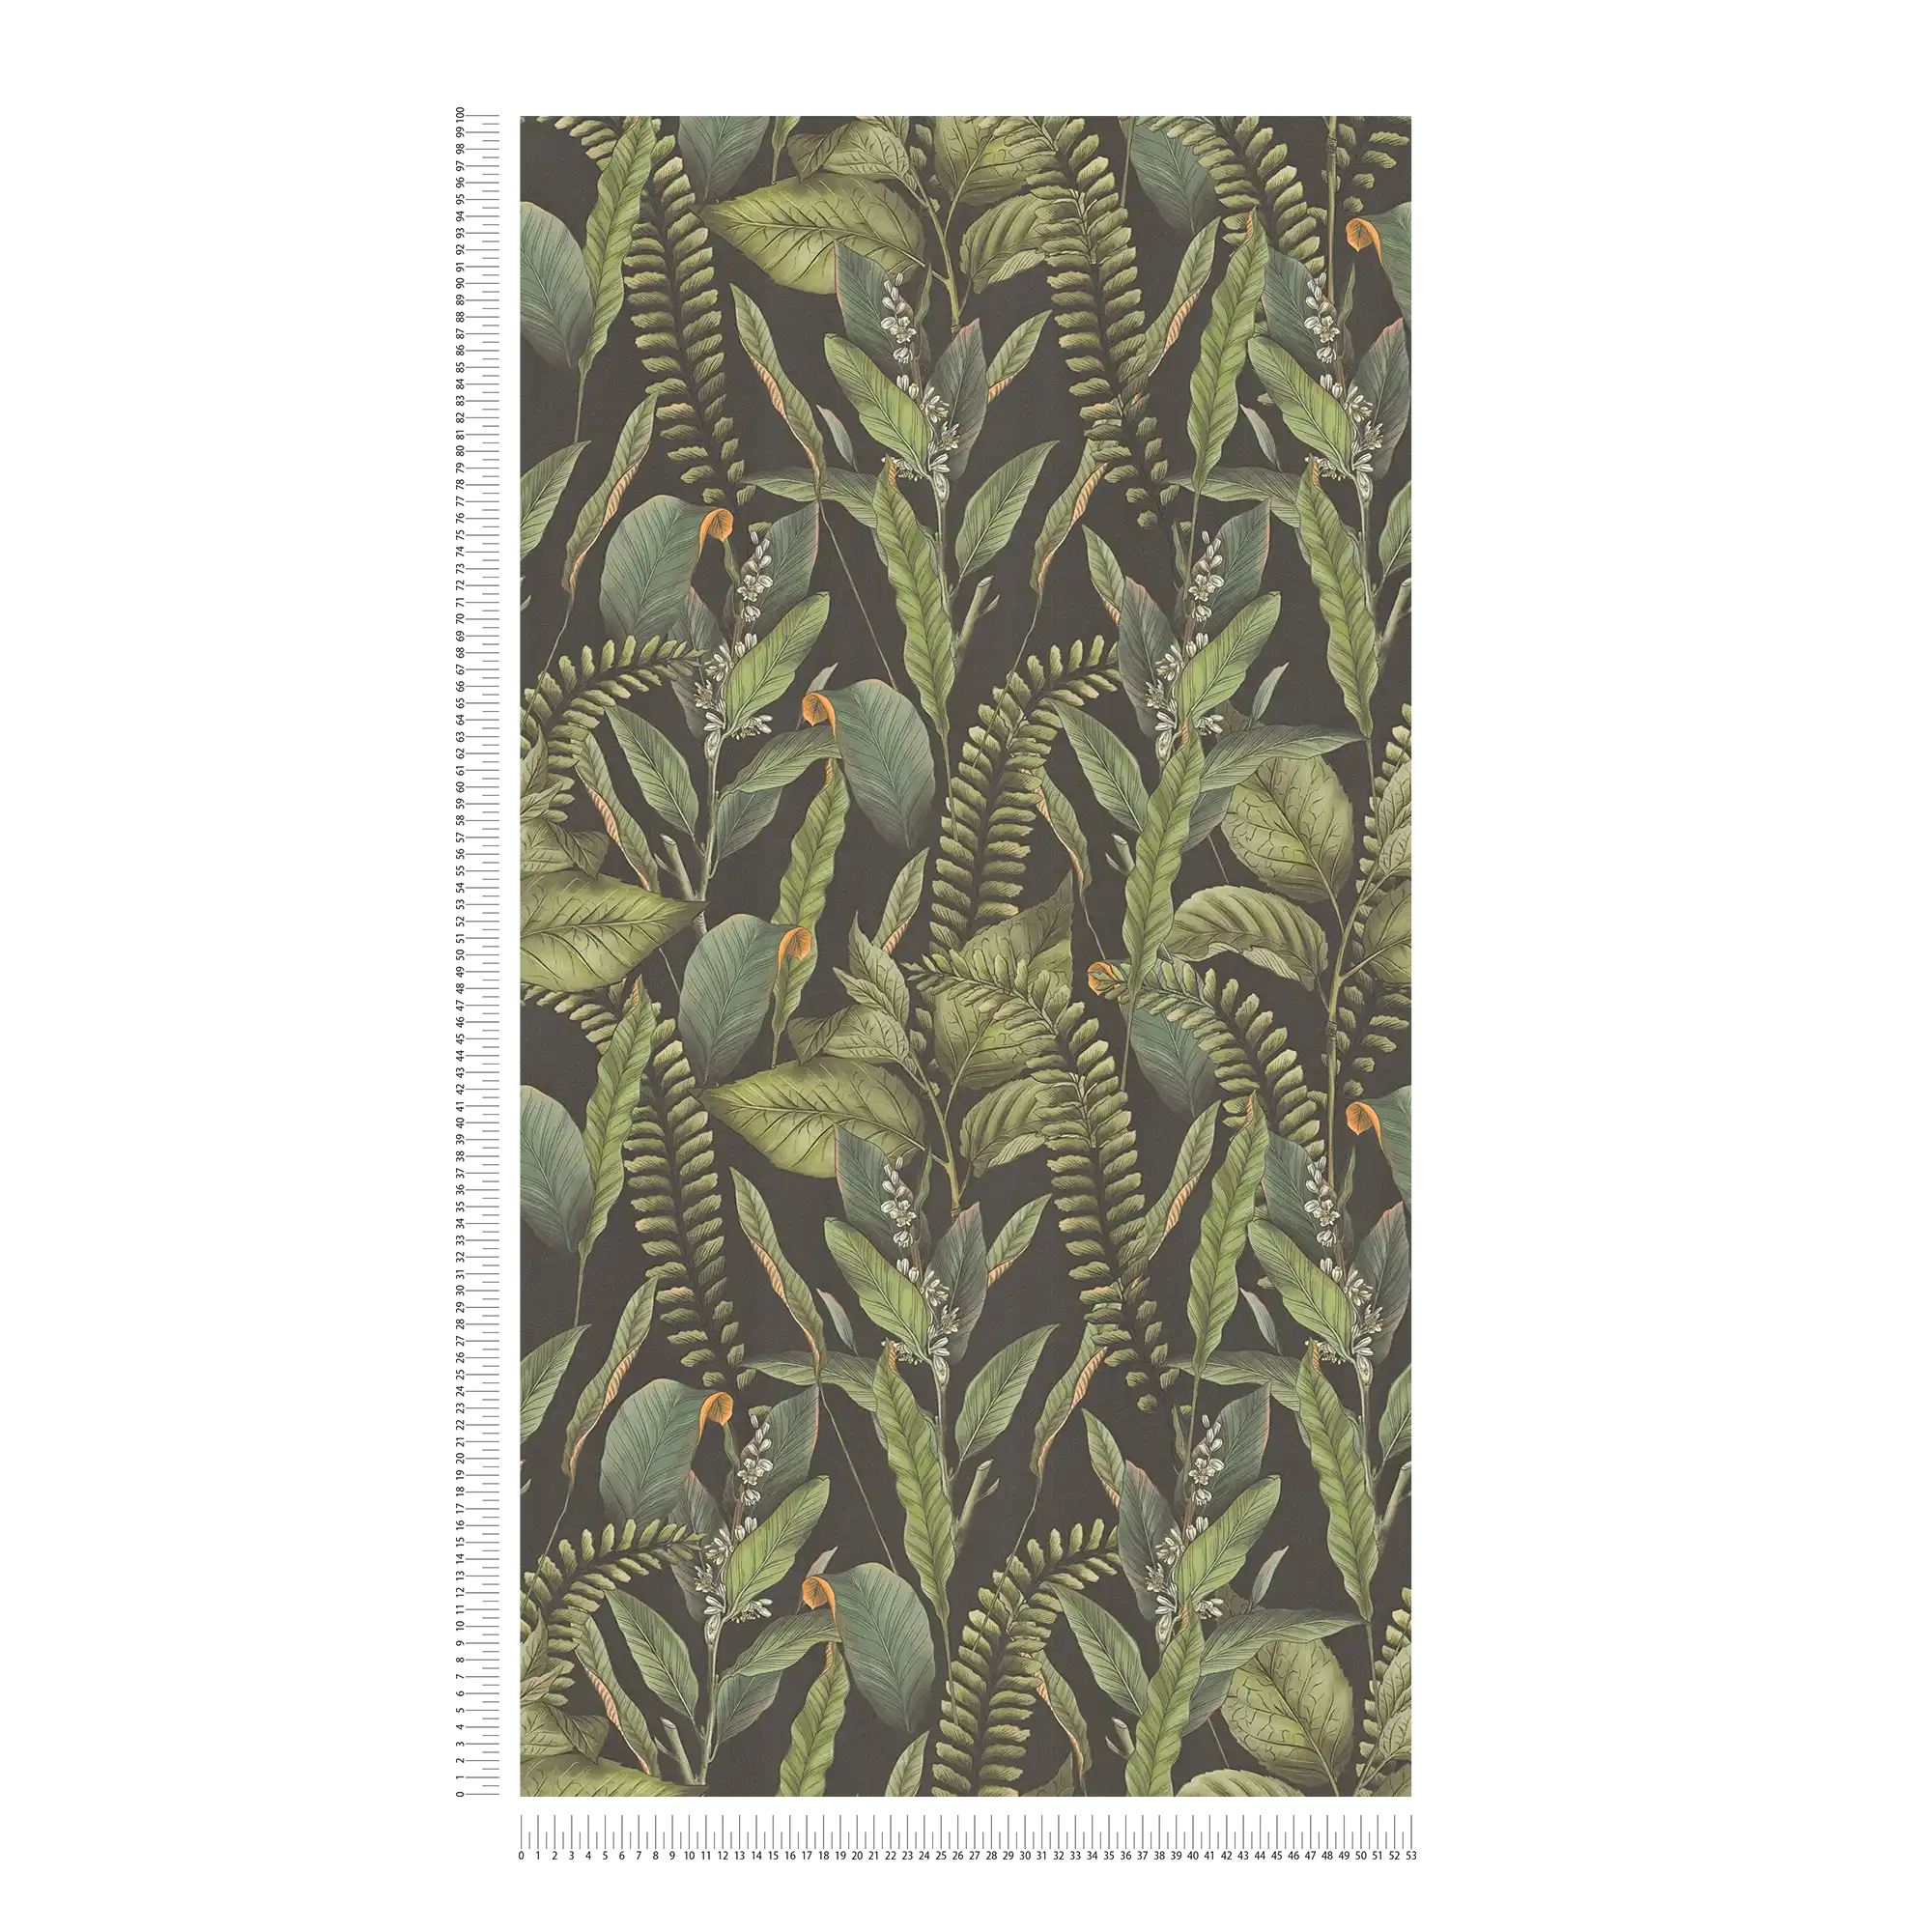             Dschungeltapete im floralen Stil mit Blättern & Blüten strukturiert matt – Schwarz, Grün, Orange
        